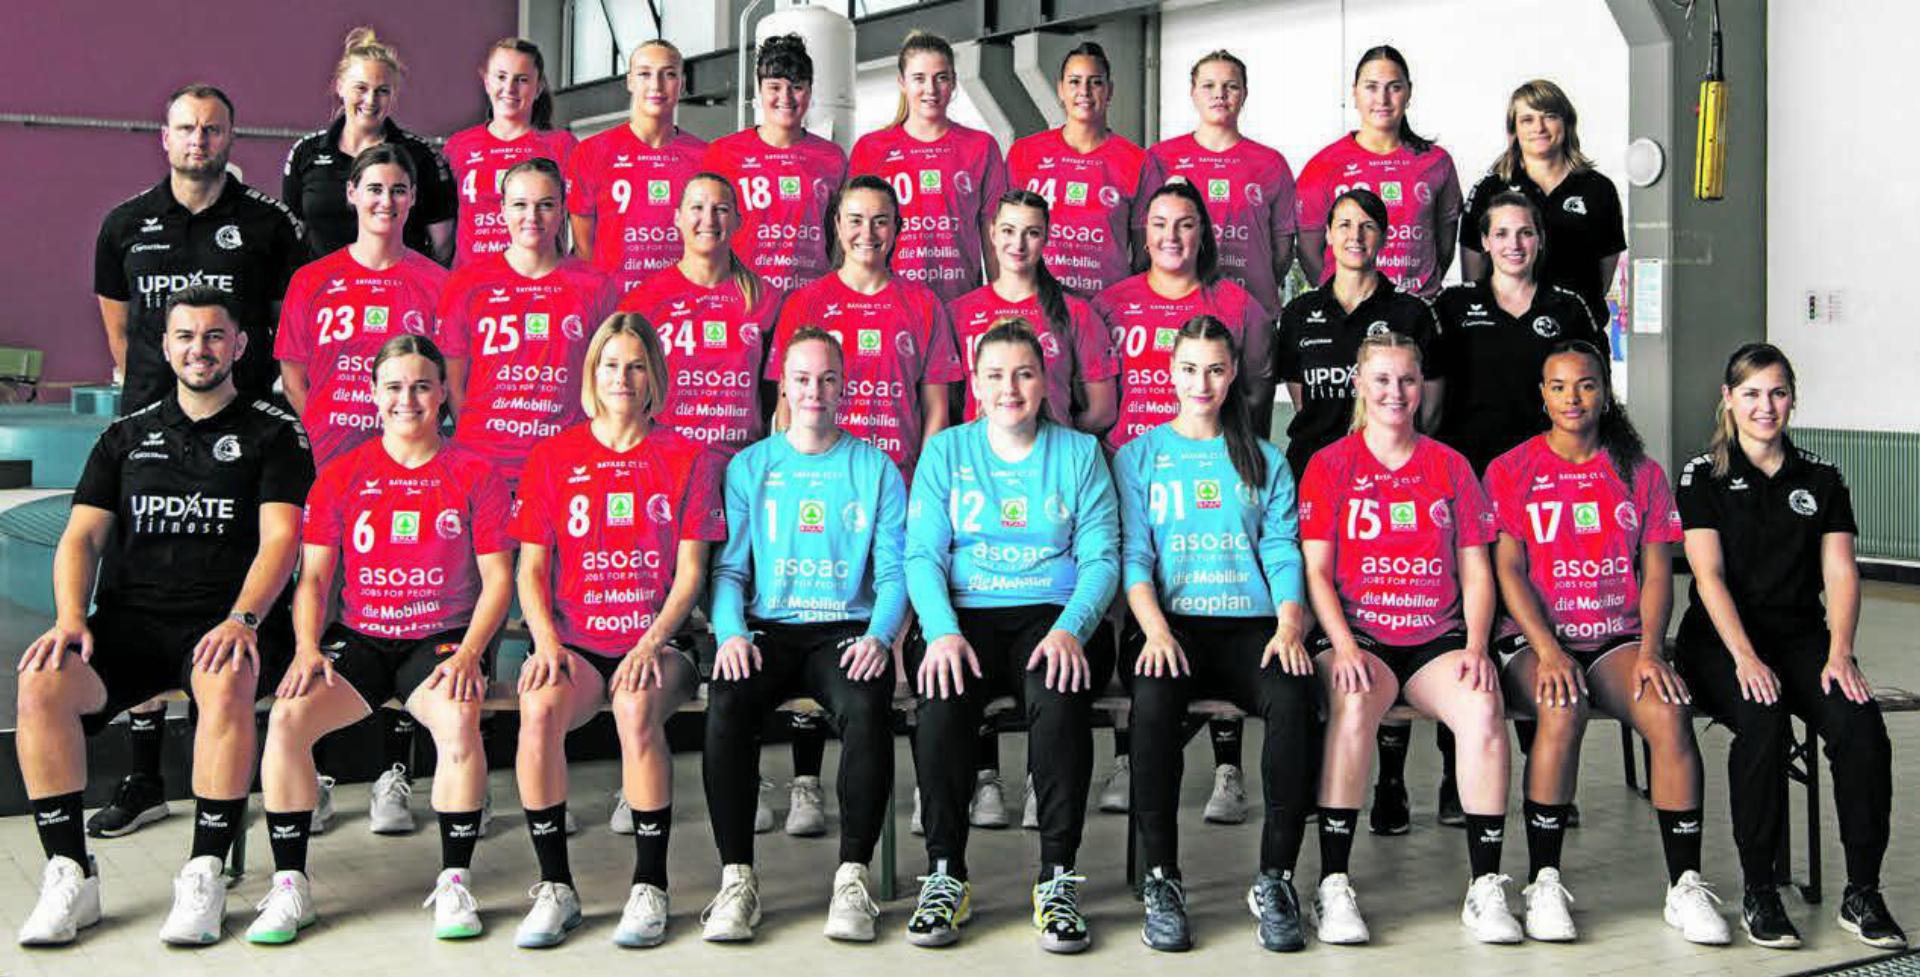 Team Frauen-Handball-Club Rotweiss Thun.